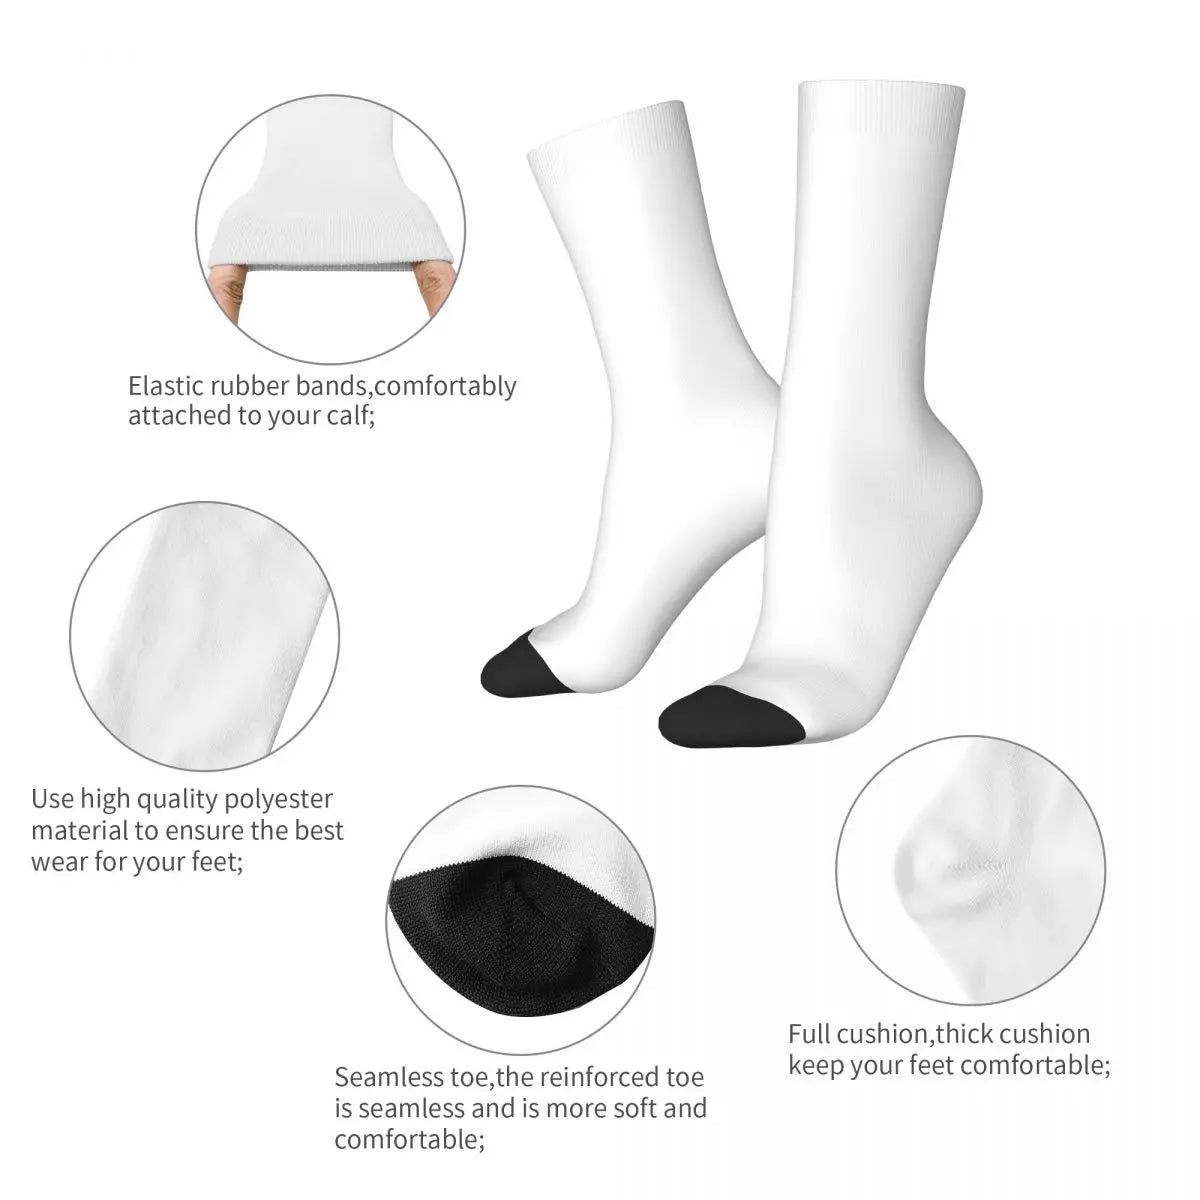 Calcetines - Calcetines forenses regalos divertidos locos personalizados Calcetines de mujer Hombres